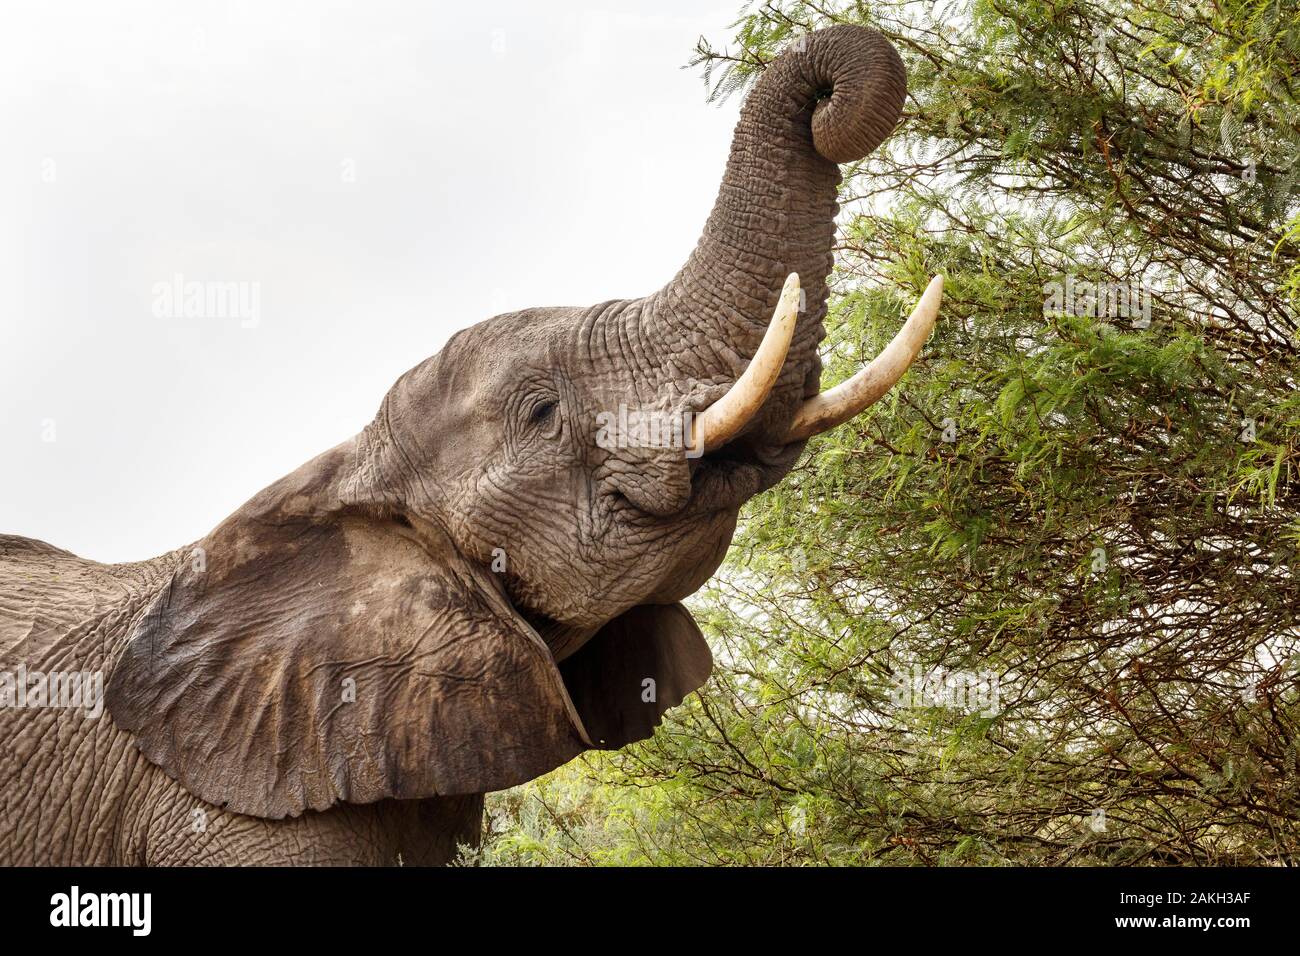 Namibia, Erongo province, Brandberg, desert elephant (Loxodonta africana) eating branches Stock Photo